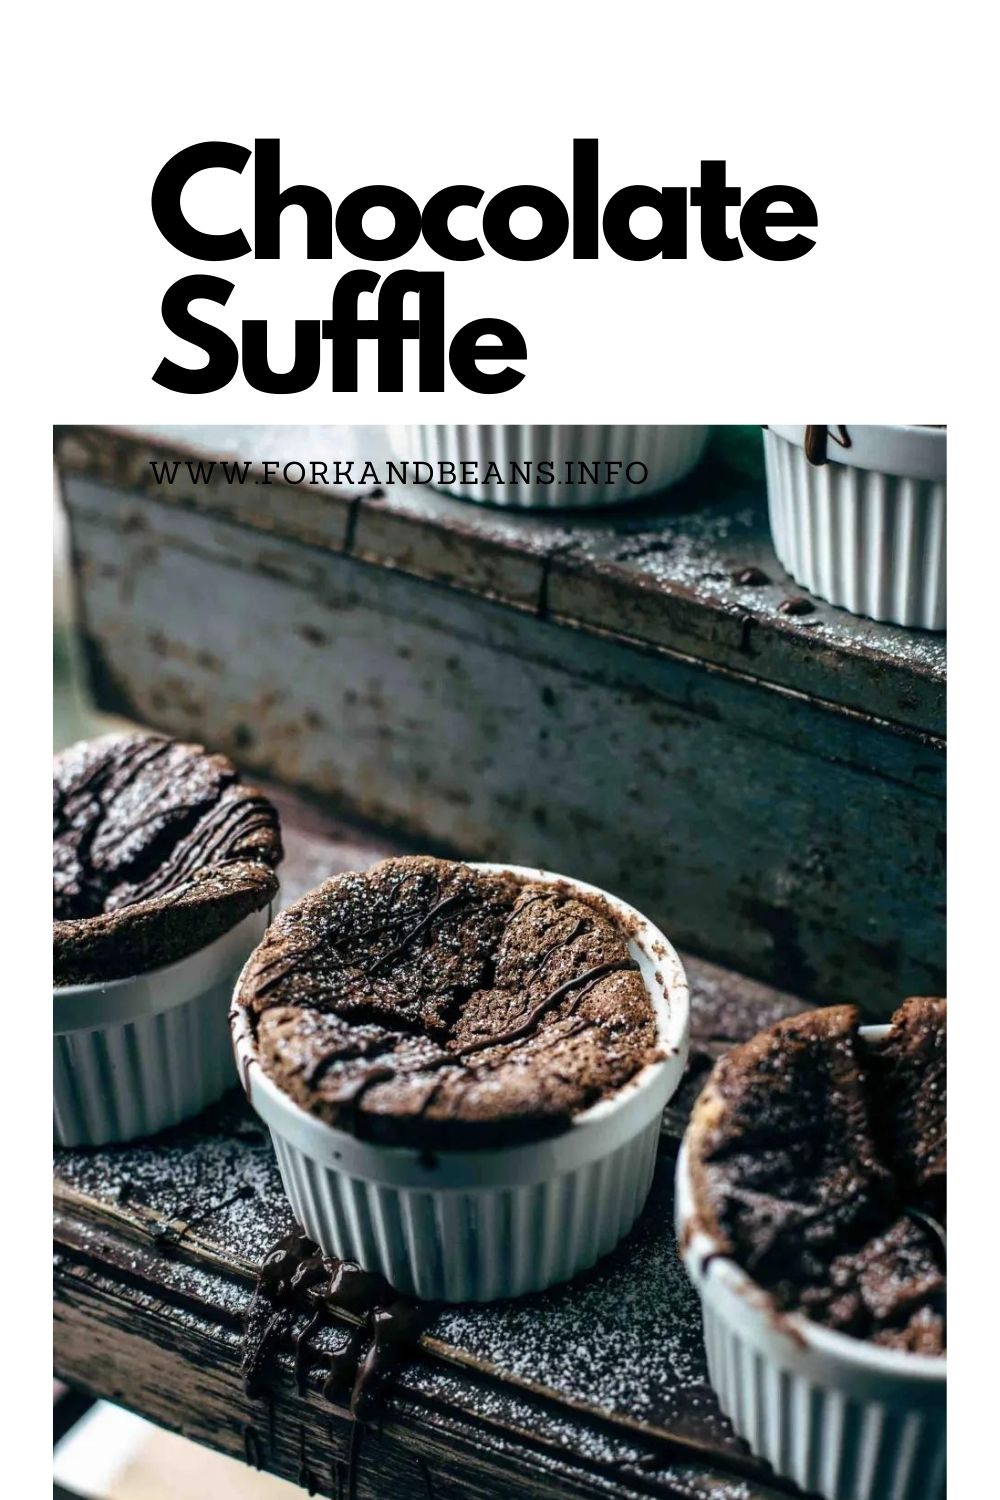 How to make Chocolate Soufflé